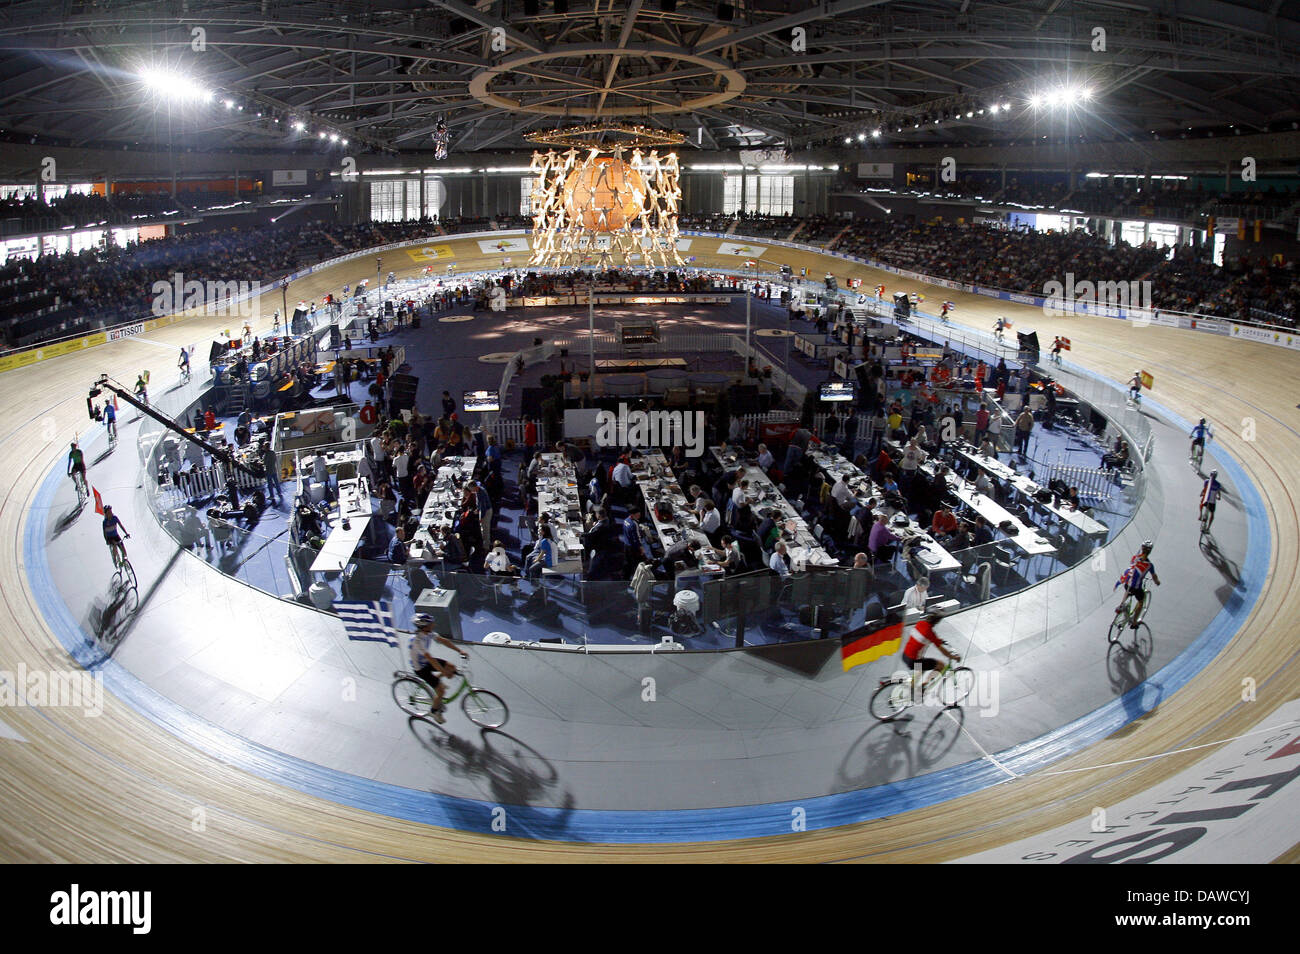 La photo montre le nouveau vélodrome pour le cyclisme sur piste Championnats du monde à Palma de Majorque, Espagne, jeudi, 29 mars 2007. Photo : Johannes Eisele Banque D'Images